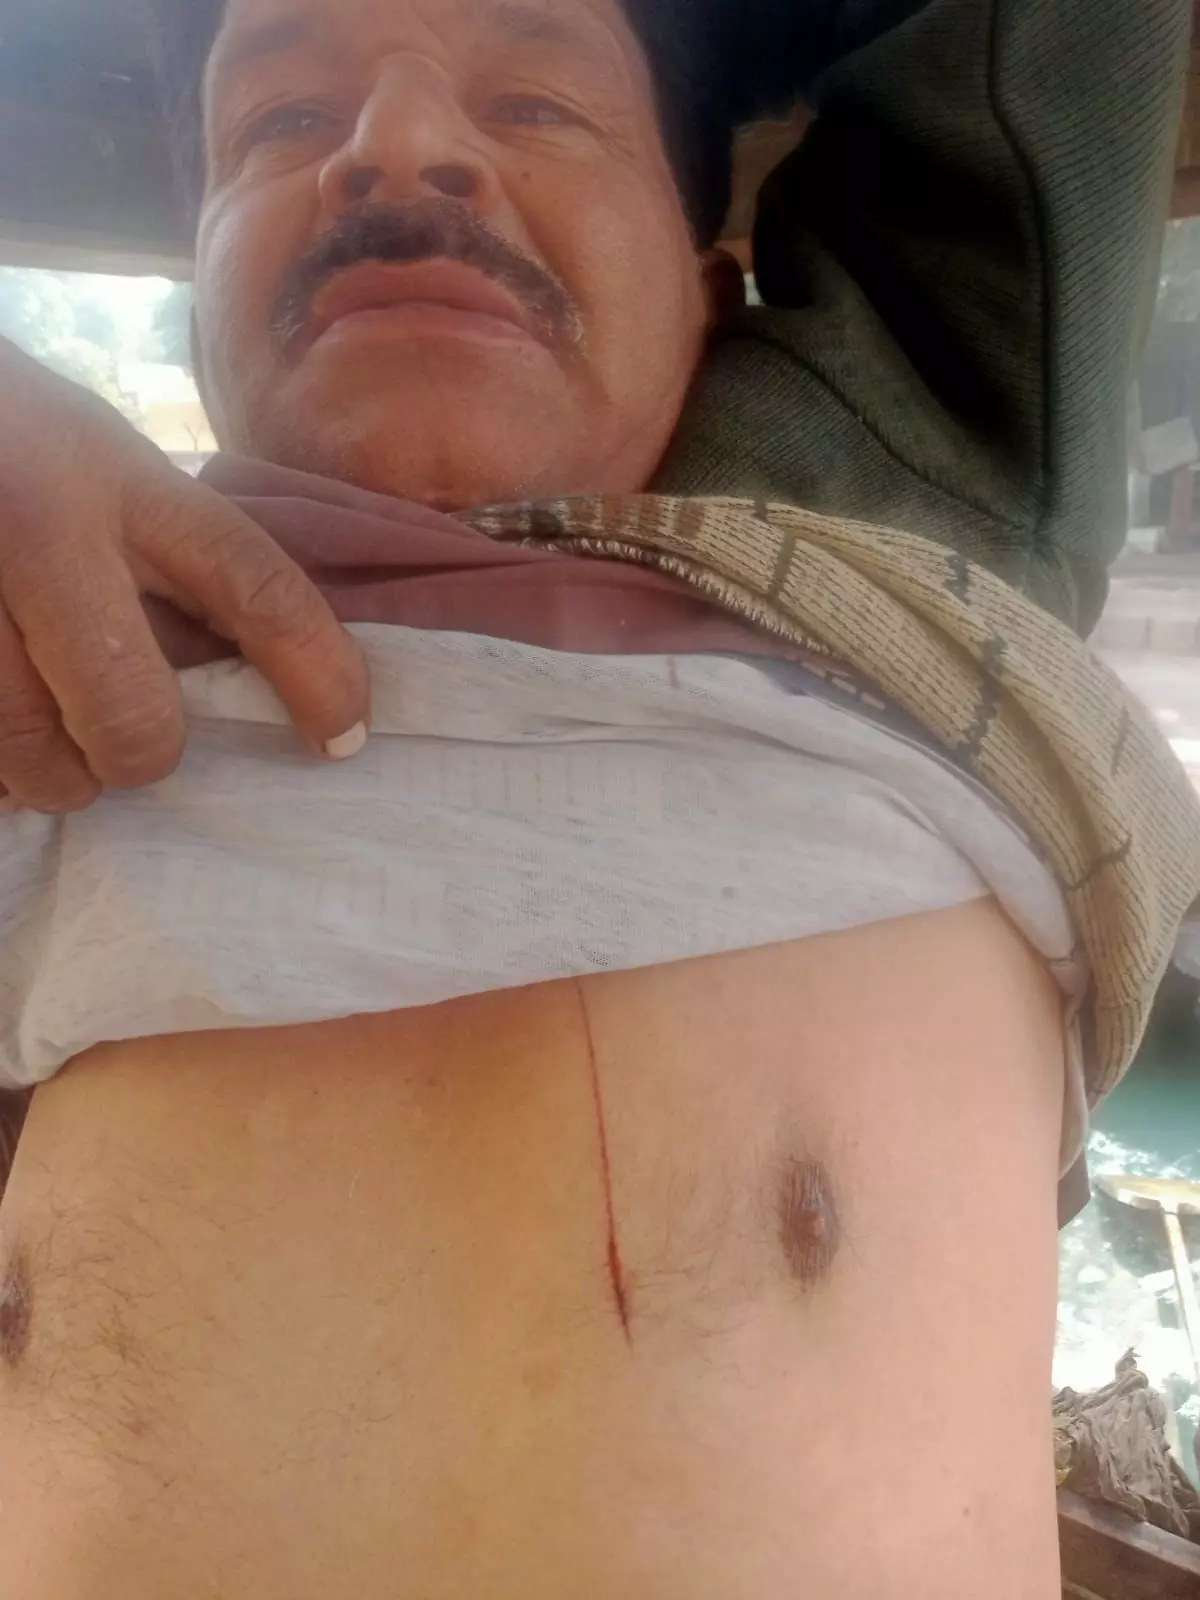 गाजियाबाद के मोदीनगर में घर के बाहर खड़े युवक पर दबंगों ने किया जानलेवा हमला विडियो वायरल